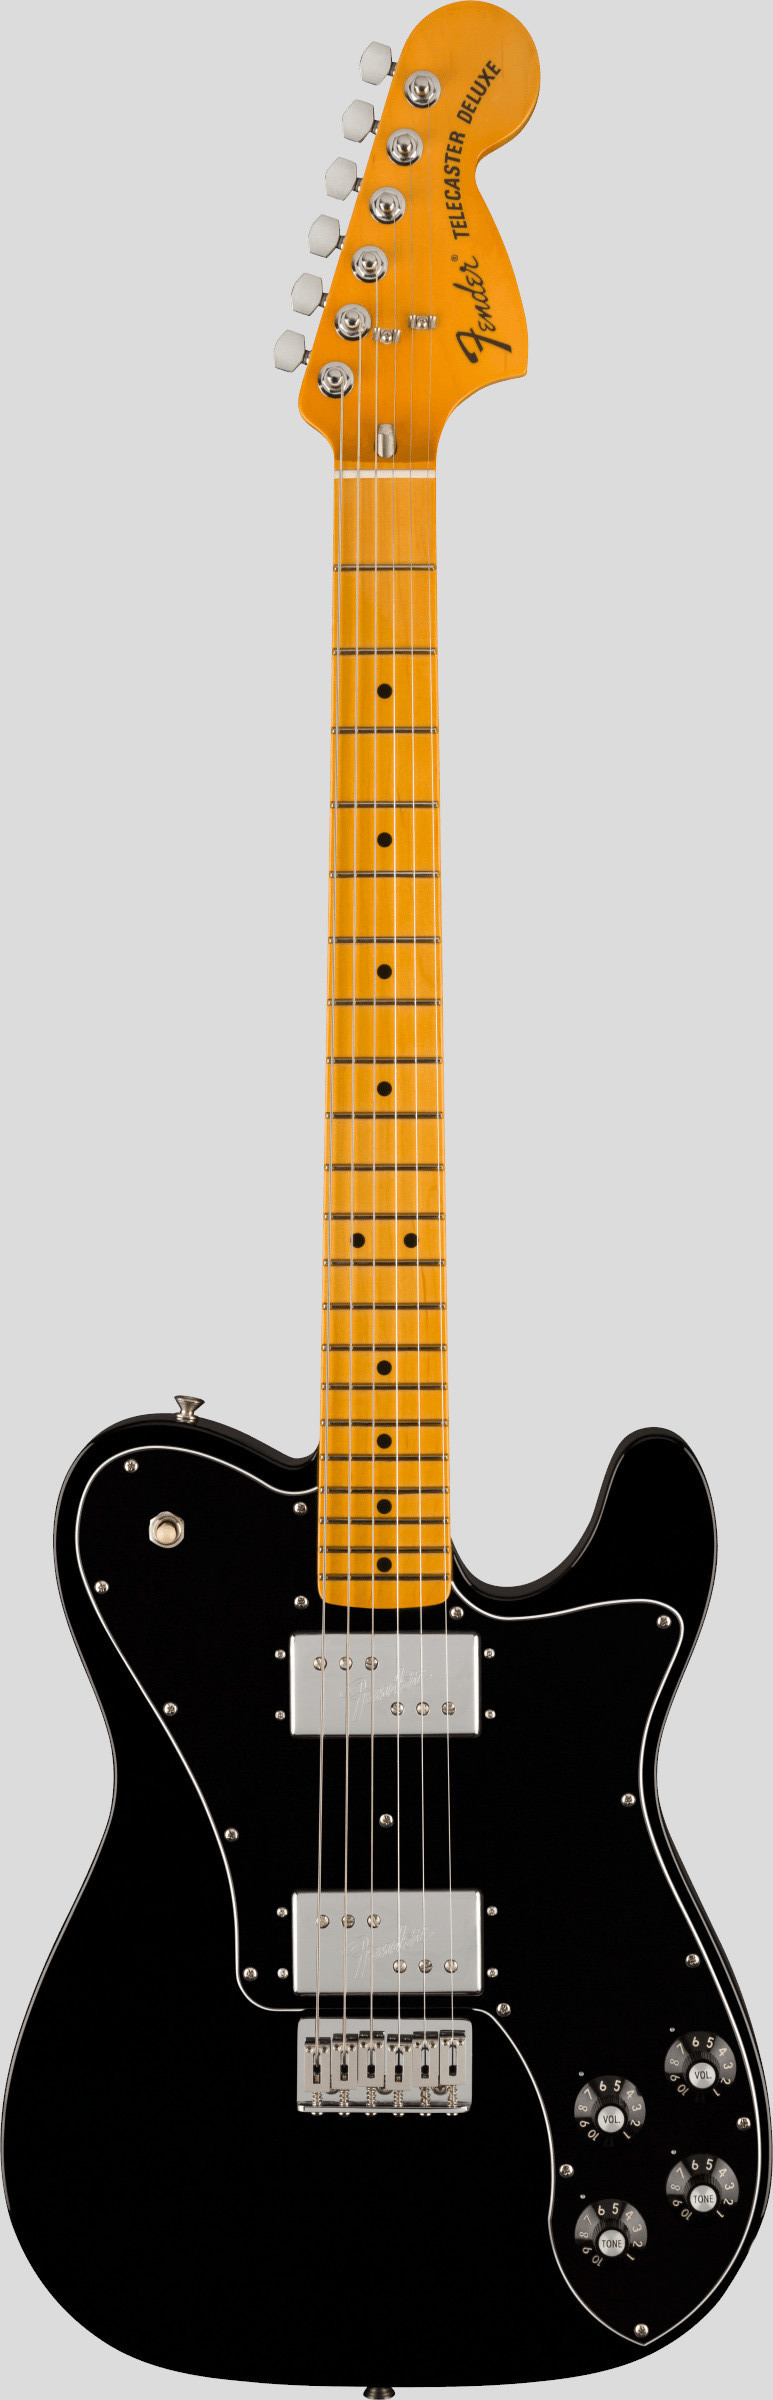 Fender American Vintage II 1975 Telecaster Deluxe Black 1